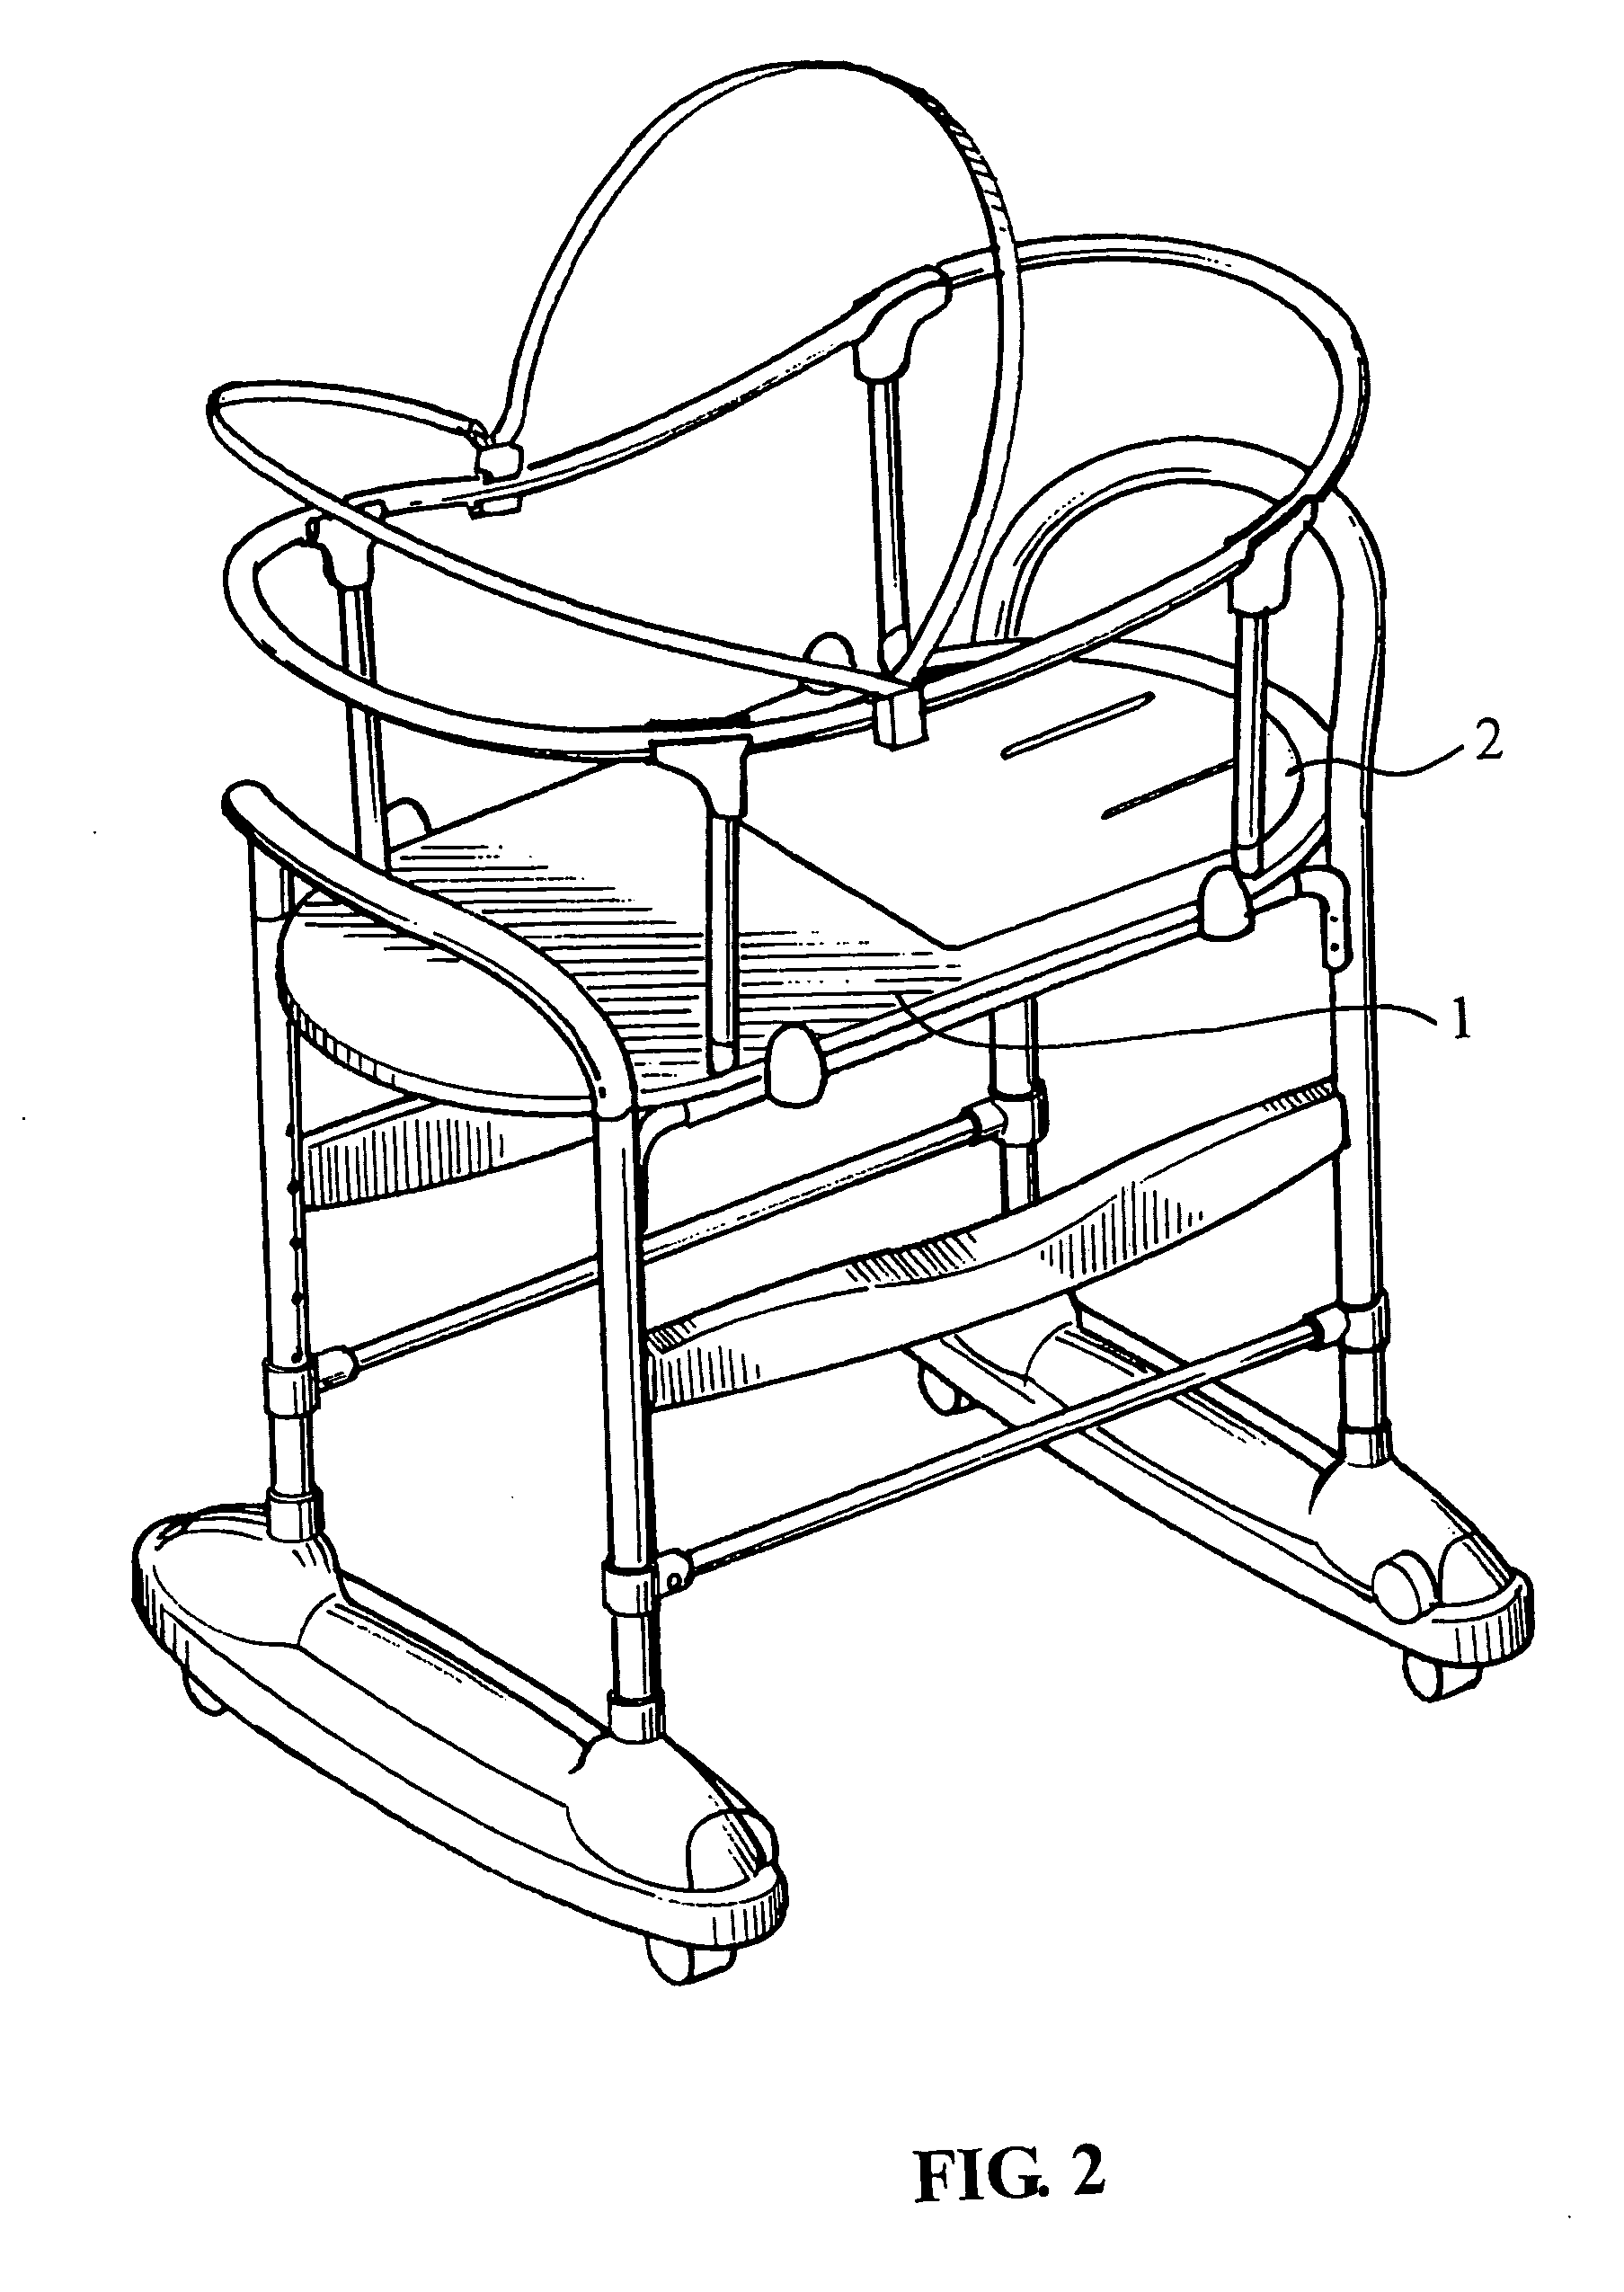 Inclination adjusting means for backrest of bassinet